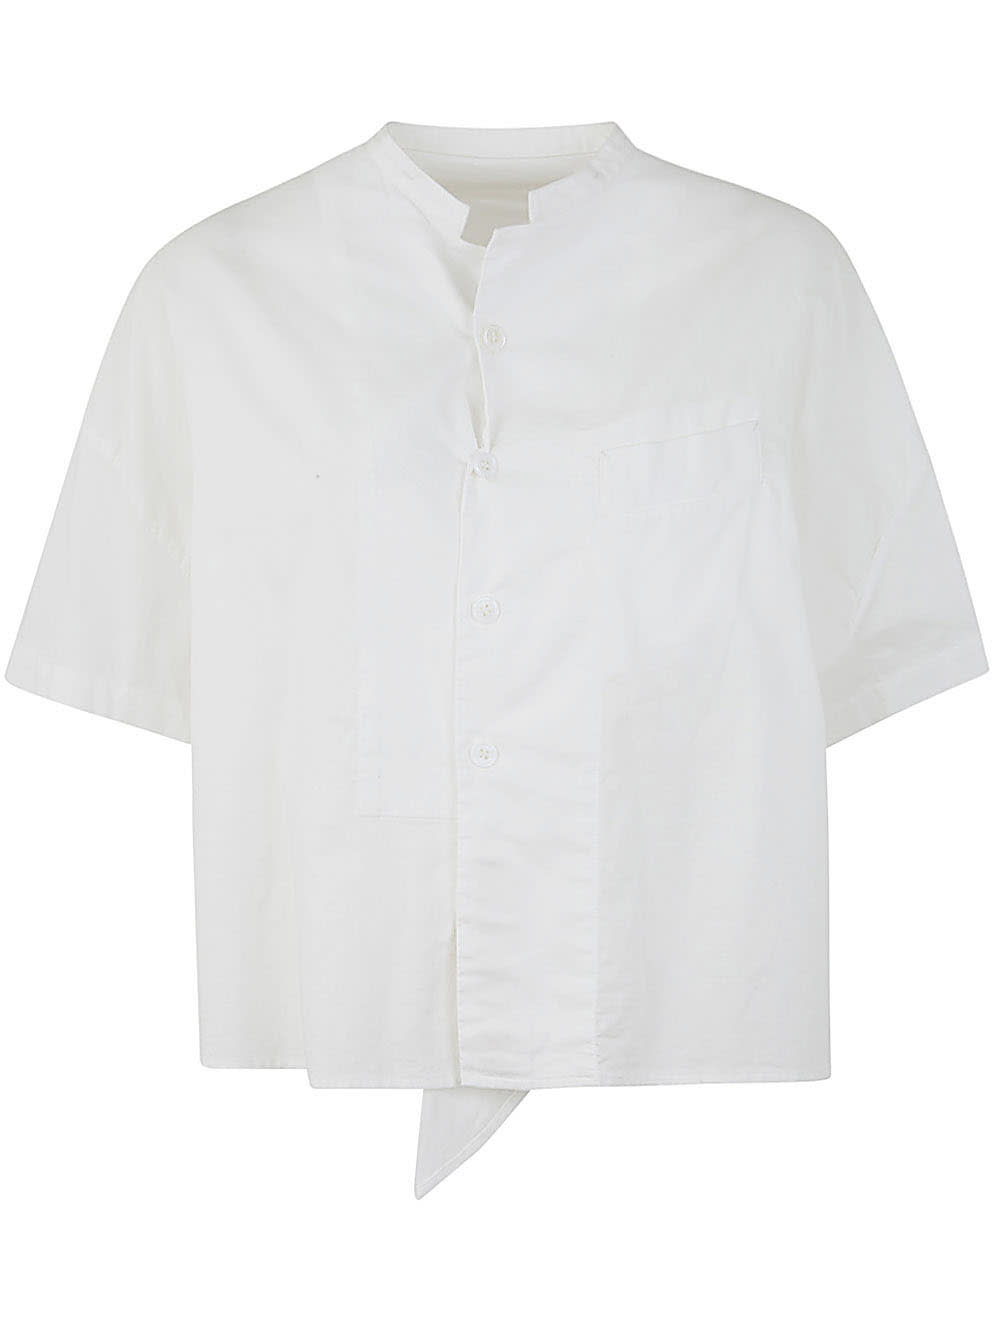 N-half Sleeve Box Shirt